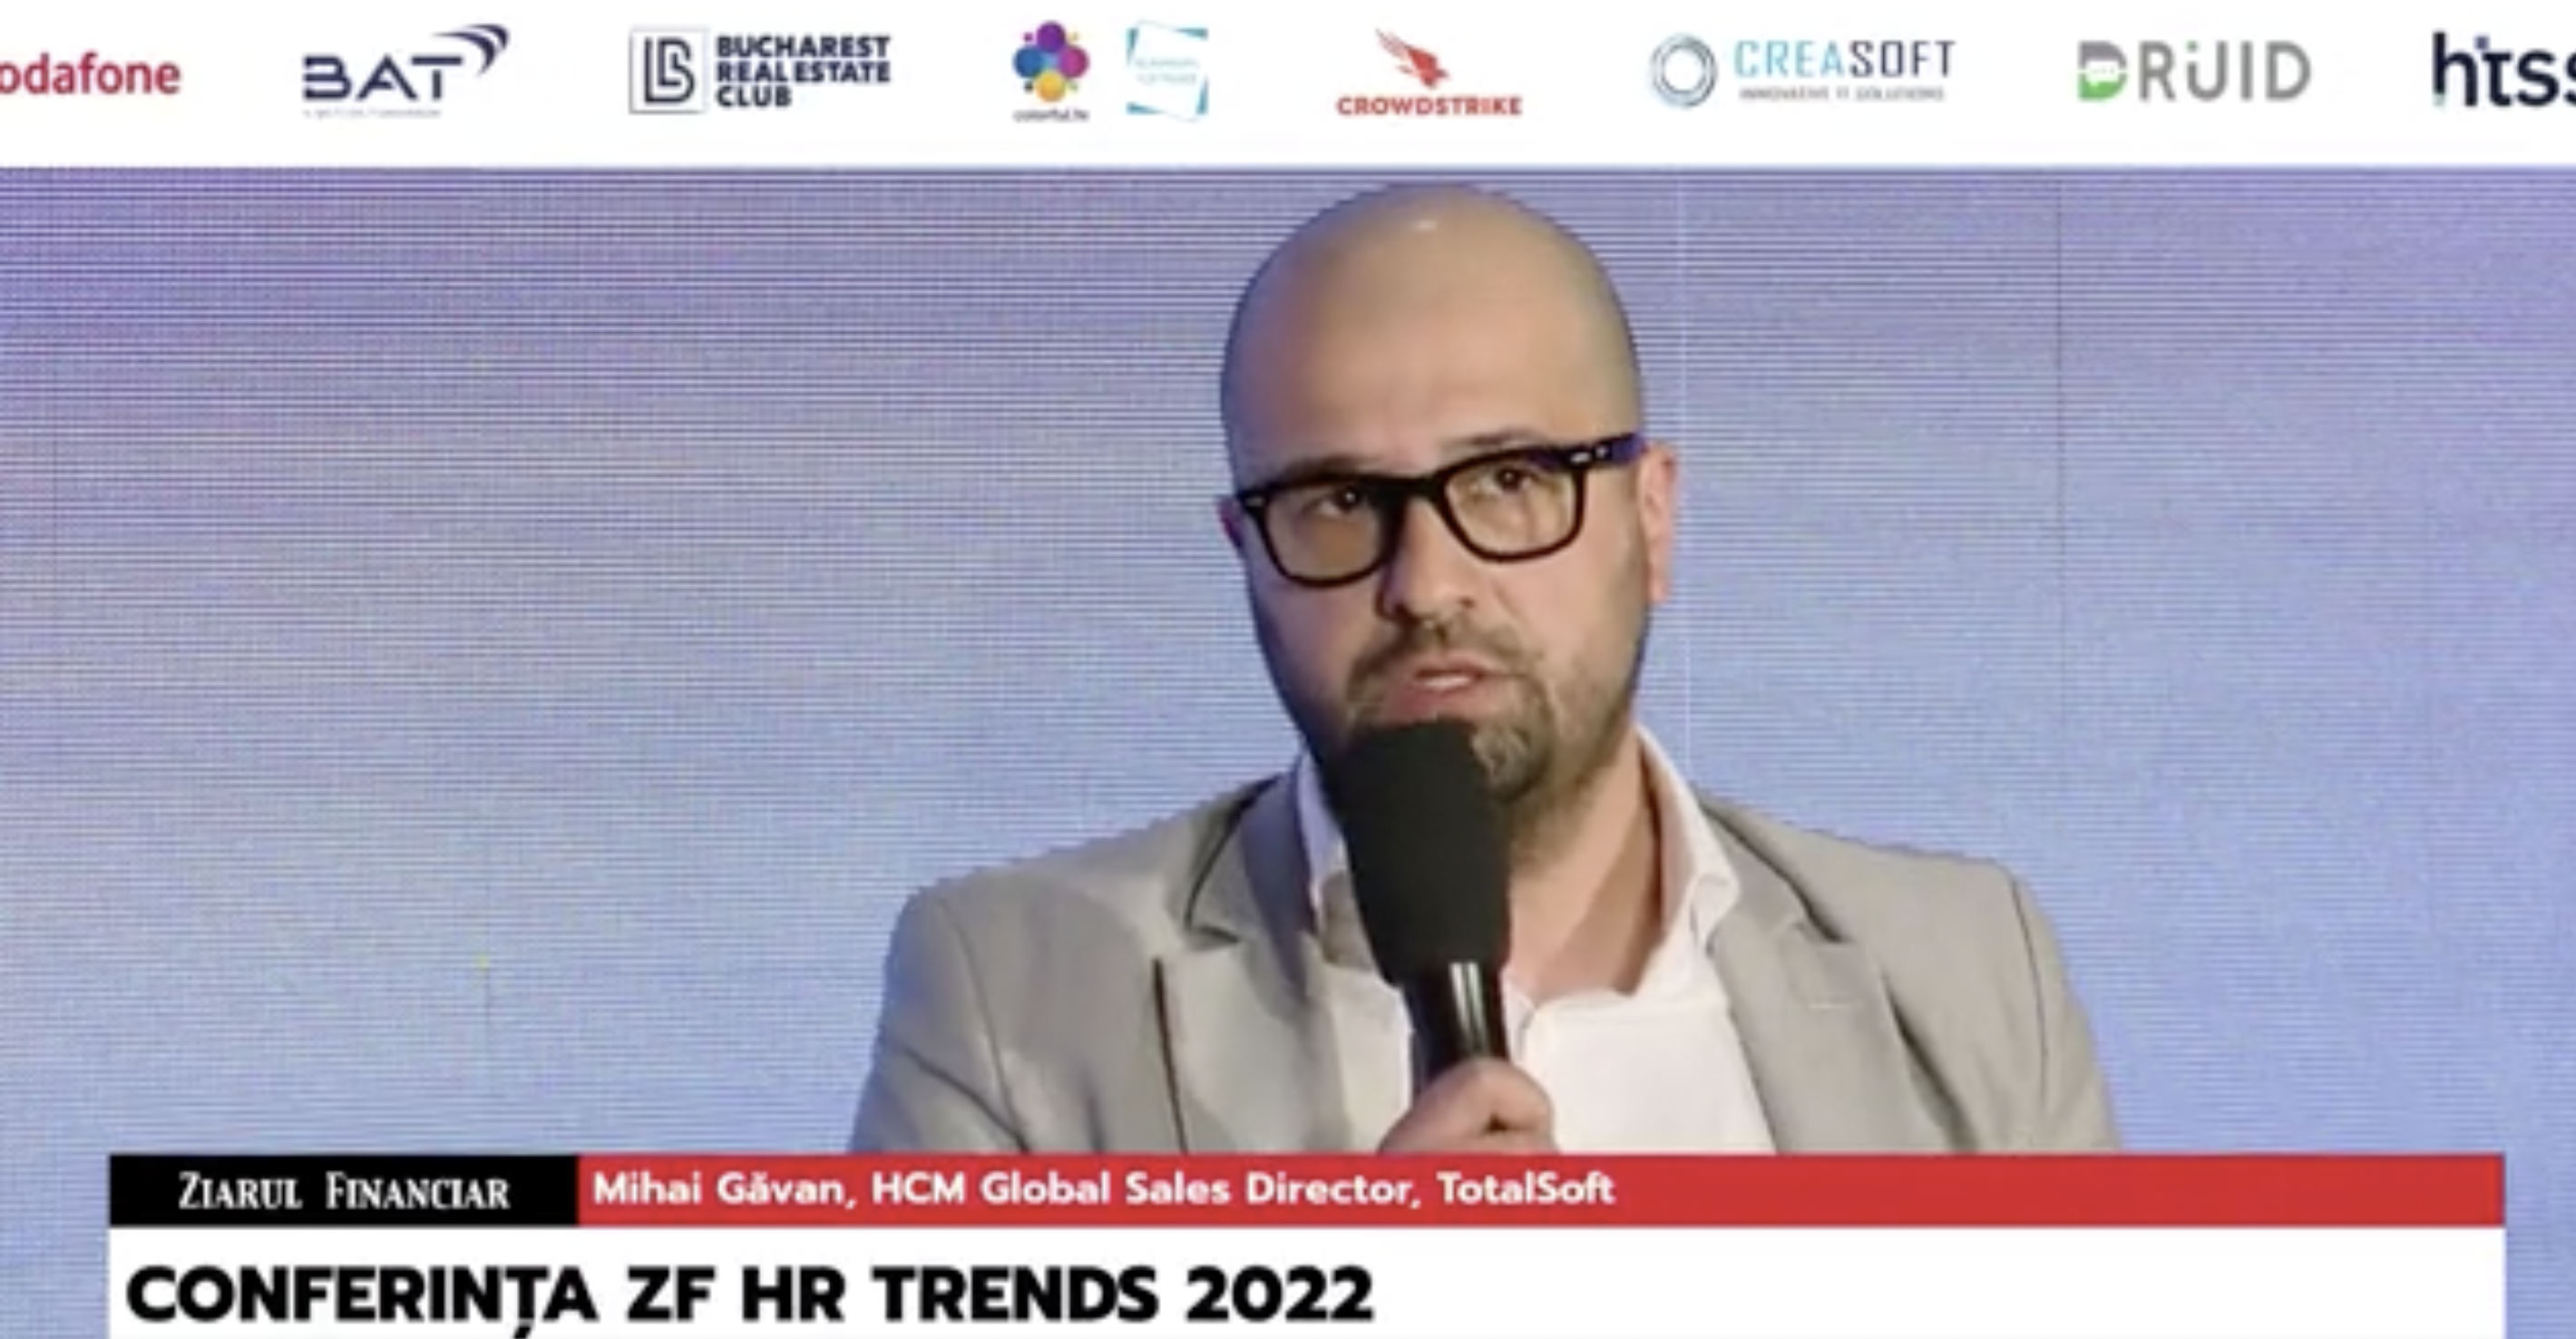 Conferinţa ZF HR Trends 2022: Resetarea pieţei muncii. Mihai Găvan, HCM Global Sales Director, TotalSoft:  În TotalSoft sunt peste 100 de joburi disponibile astăzi şi asta îmi spune că lucrurile merg într-o direcţie bună a pieţei